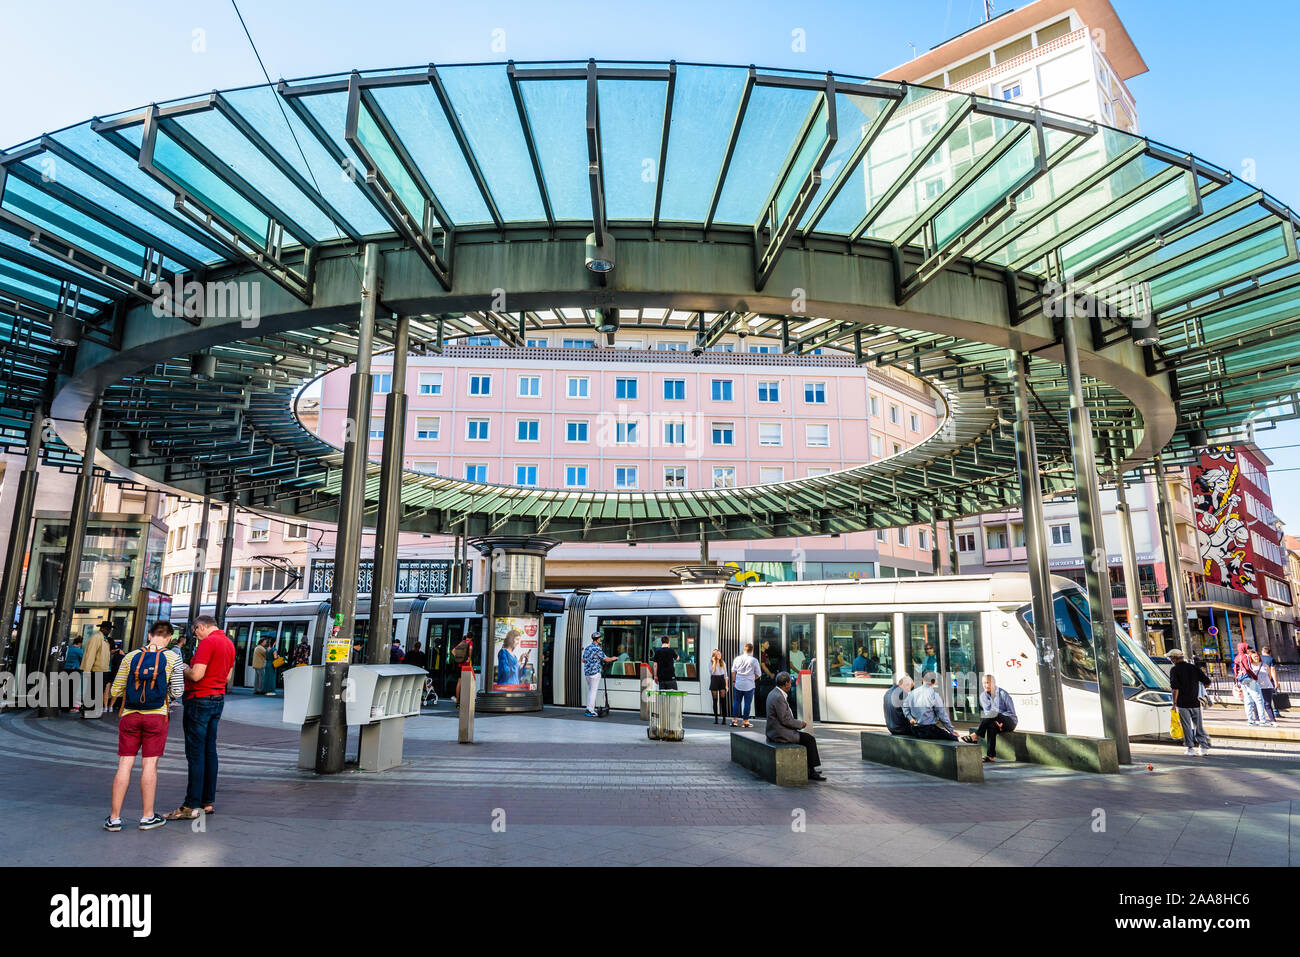 Un plataformas Citadis tranvía es estacionar en la estación Homme de Fer, la concurrida estación de la red CTS en Estrasburgo, Francia, rematada por una cúpula de vidrio Foto de stock